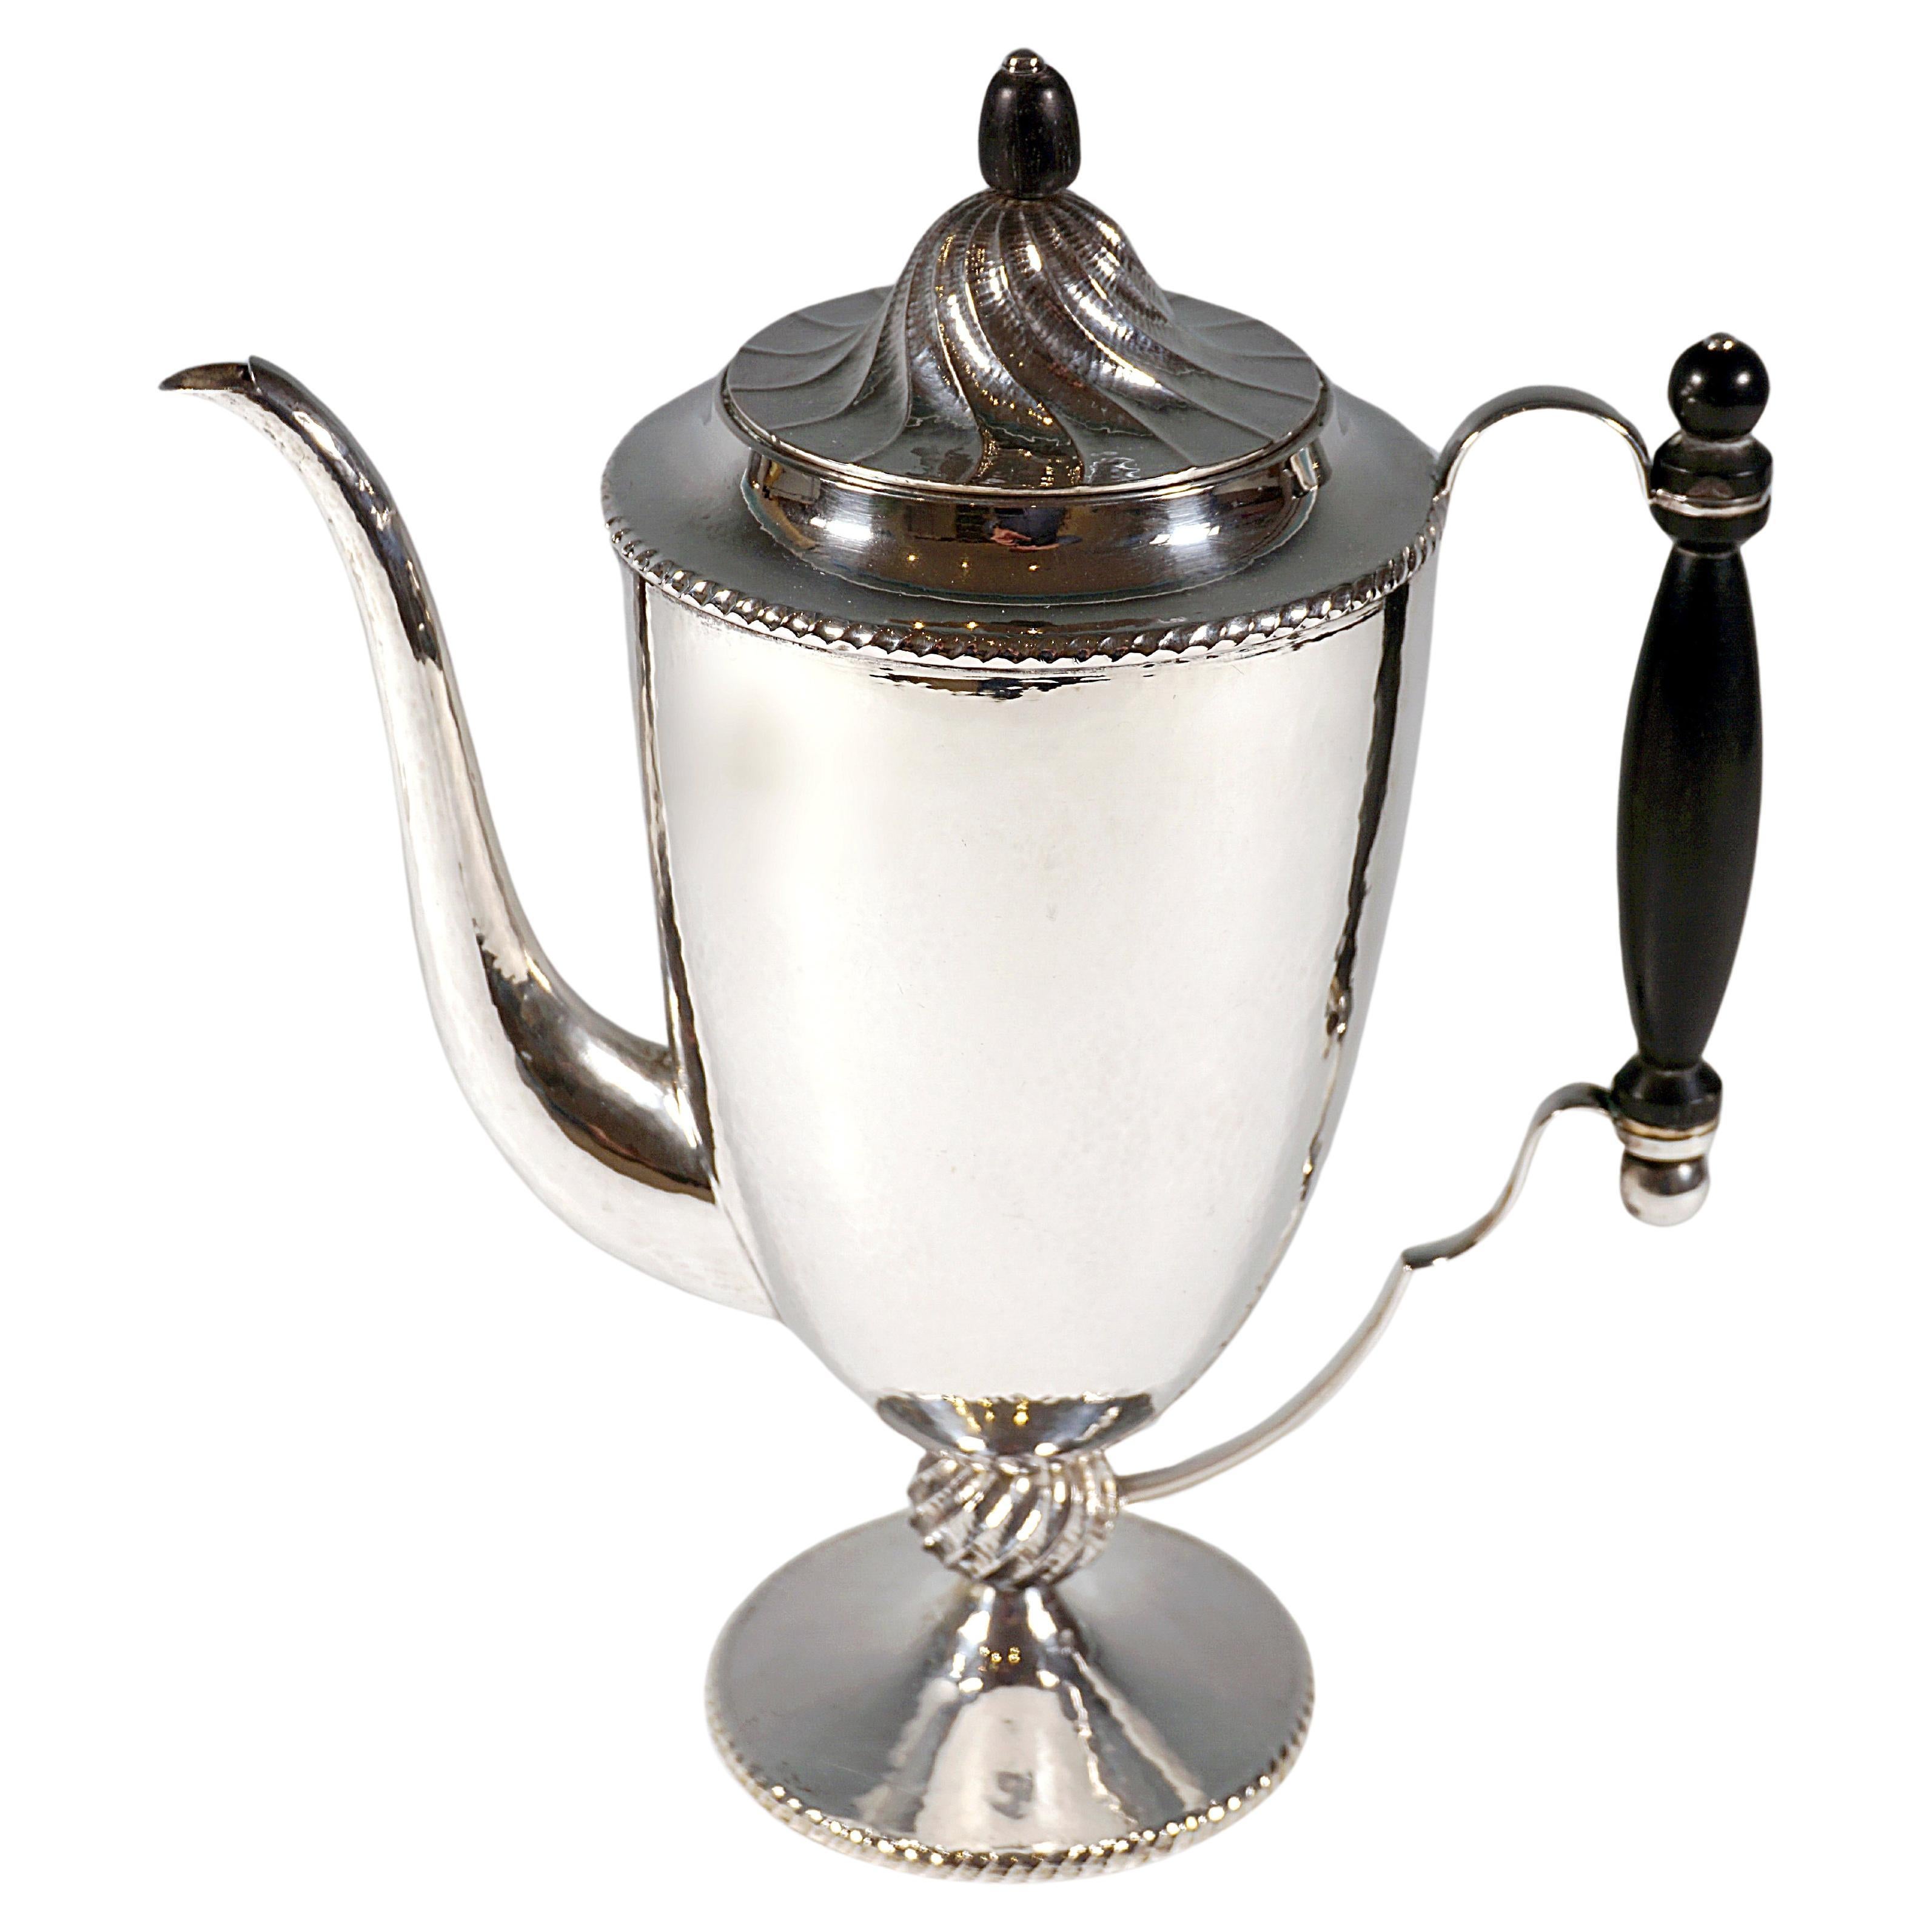 Viennese Art Déco Silver Peche Style Coffee Pot by J.C. Klinkosch, Circa 1920